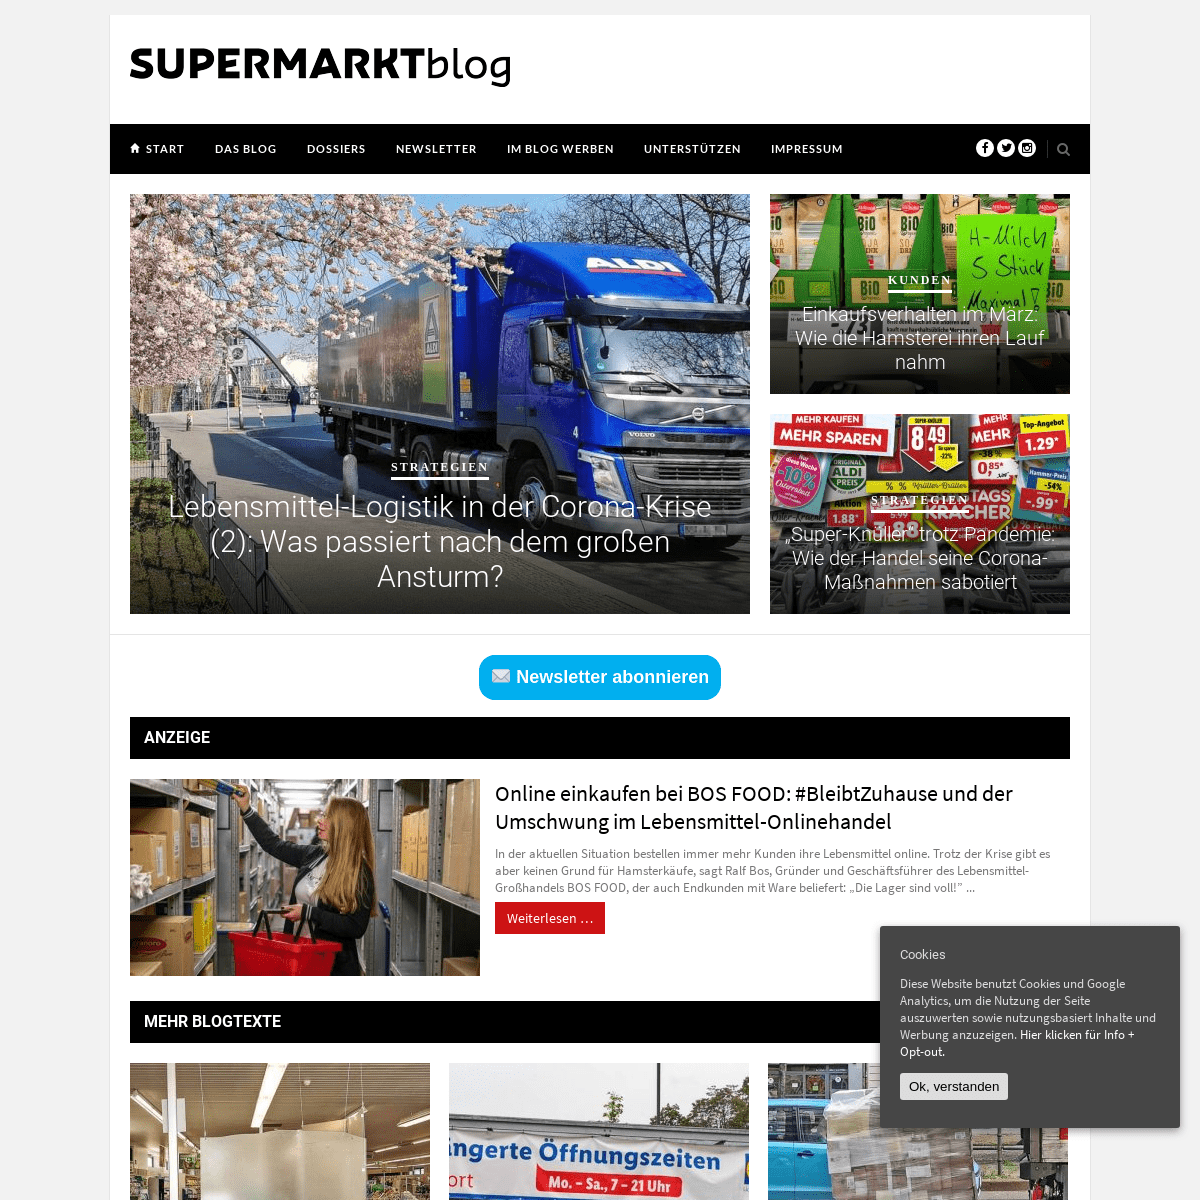 A complete backup of supermarktblog.com